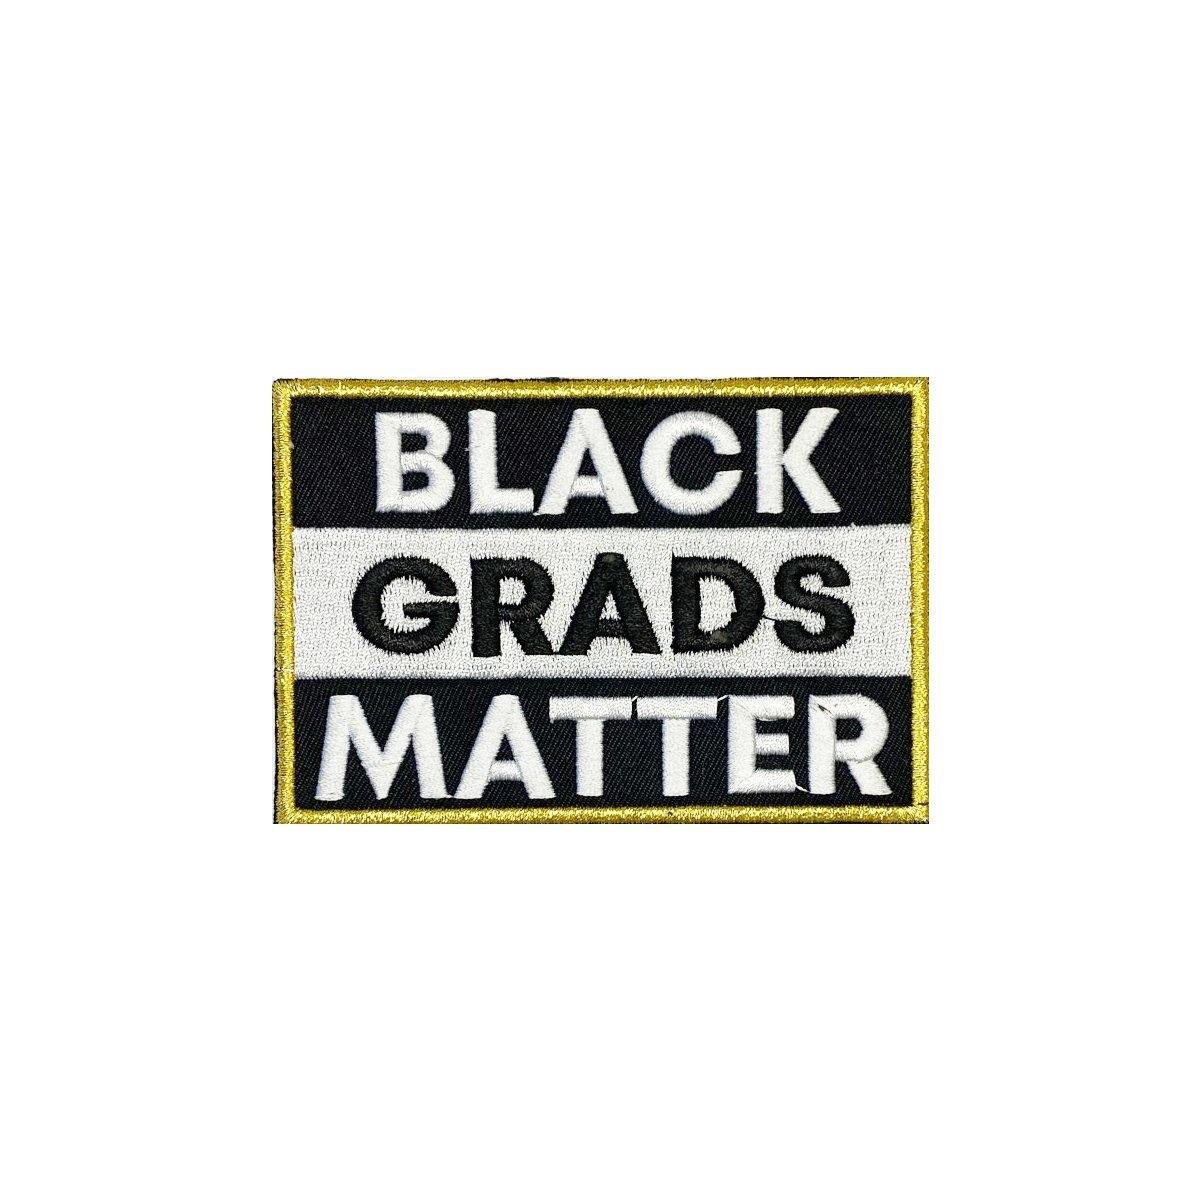 Antique Gold BLACK GRADS MATTER Graduation Stole - Graduation Attire